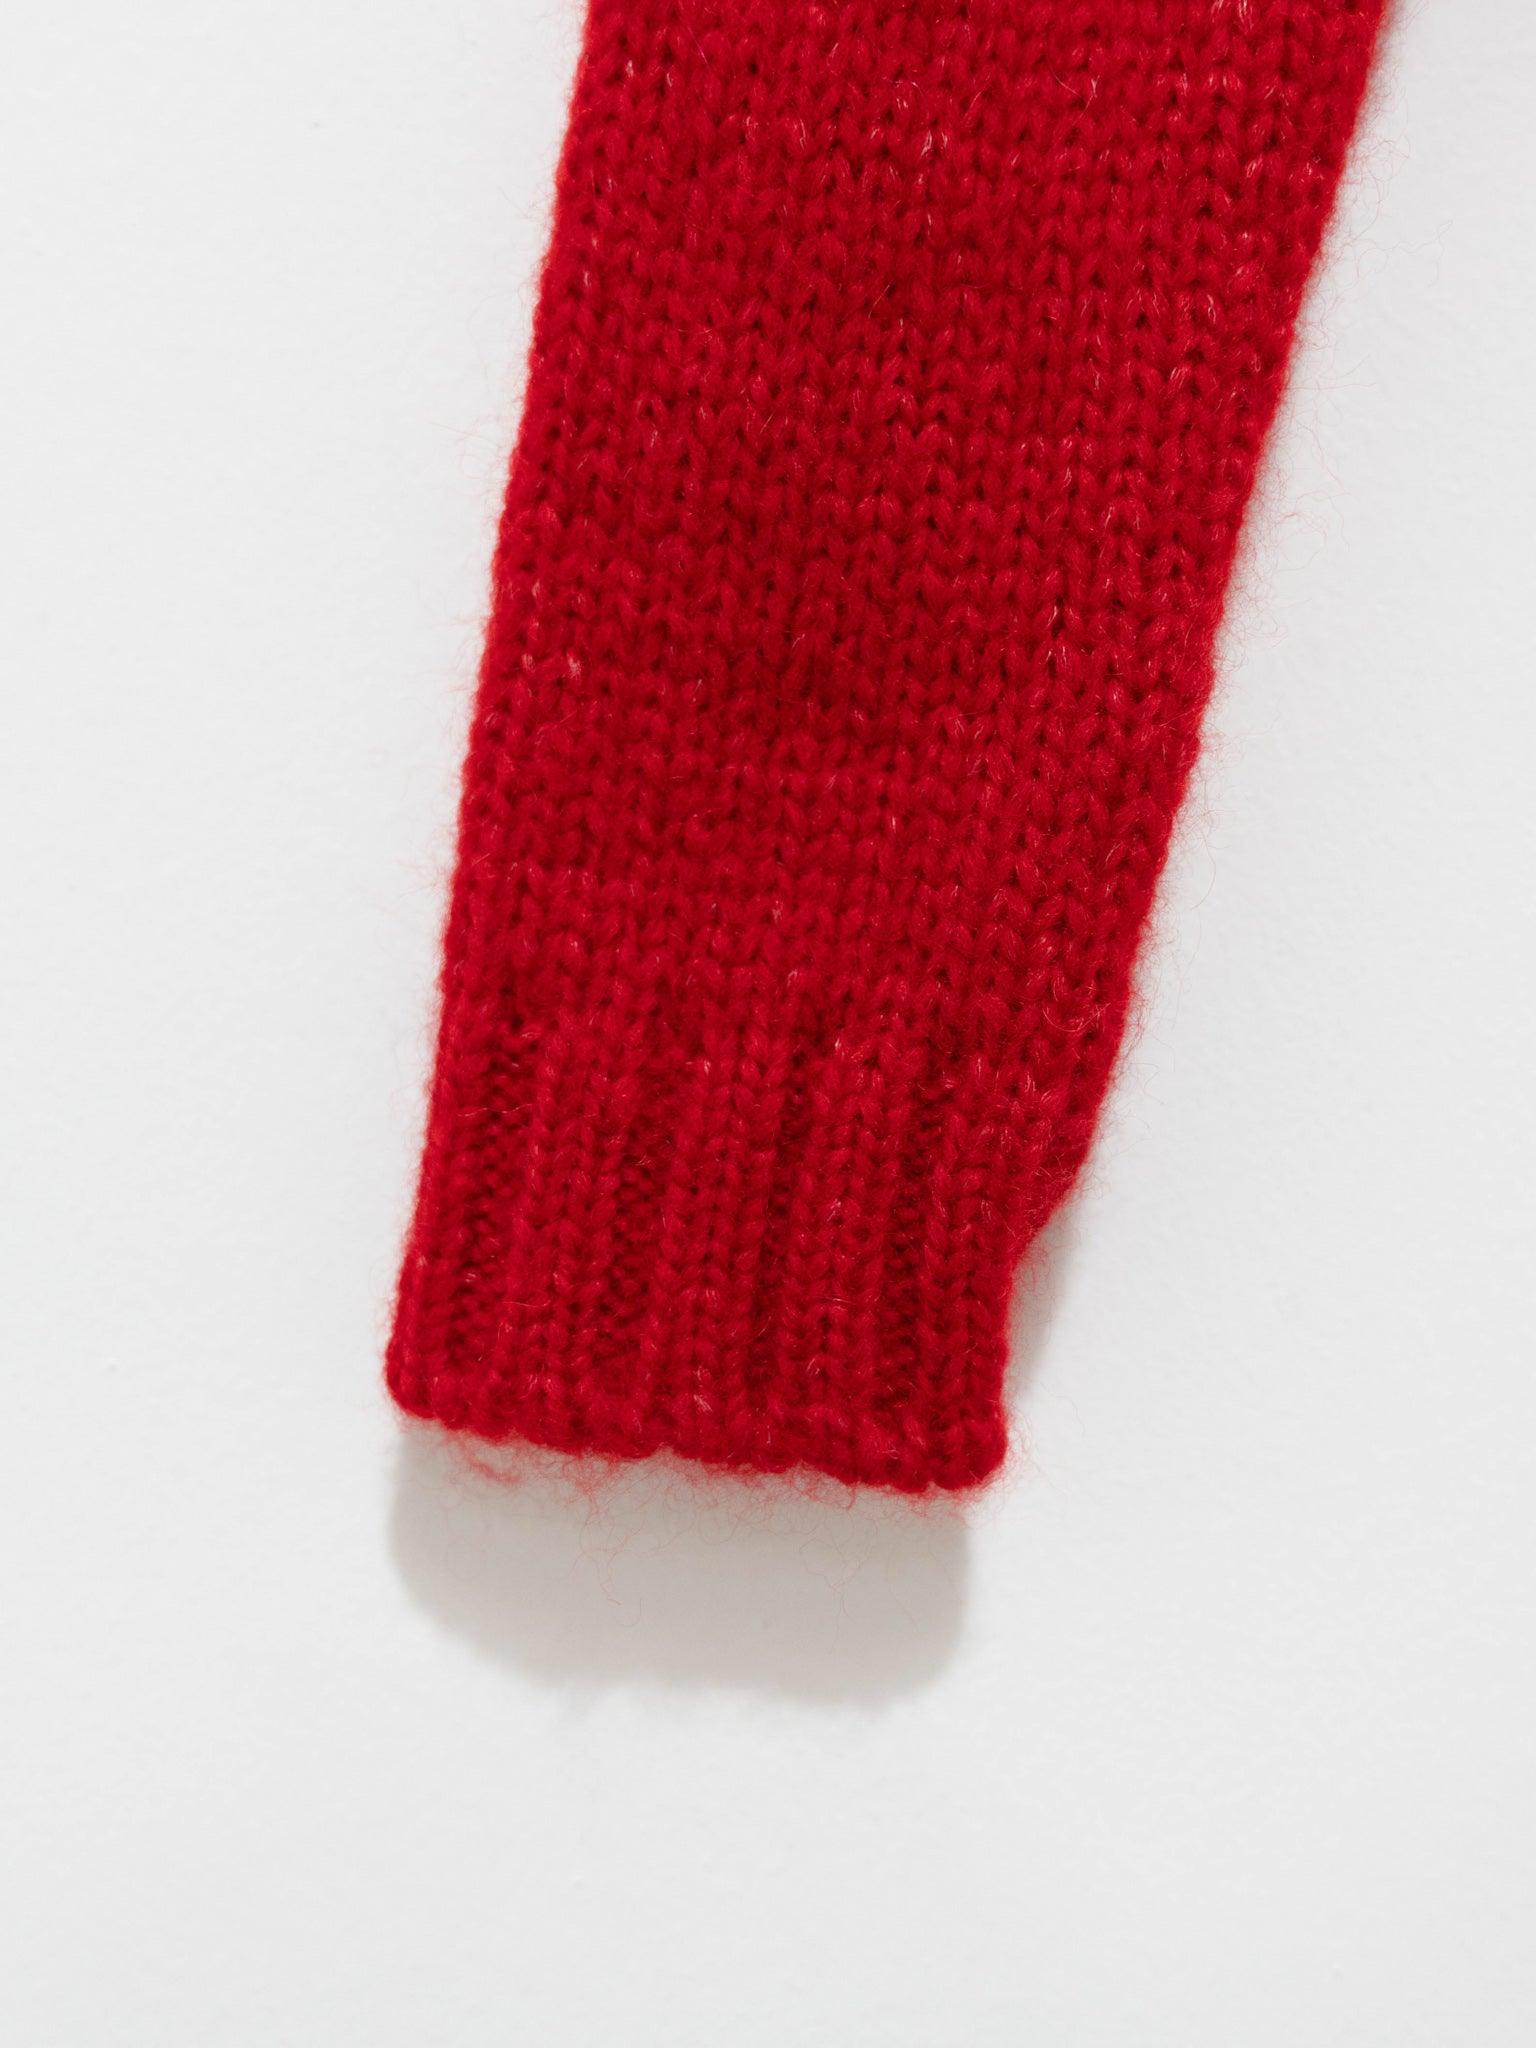 Namu Shop - Sara Lanzi Cropped Pull Knit - Scarlet